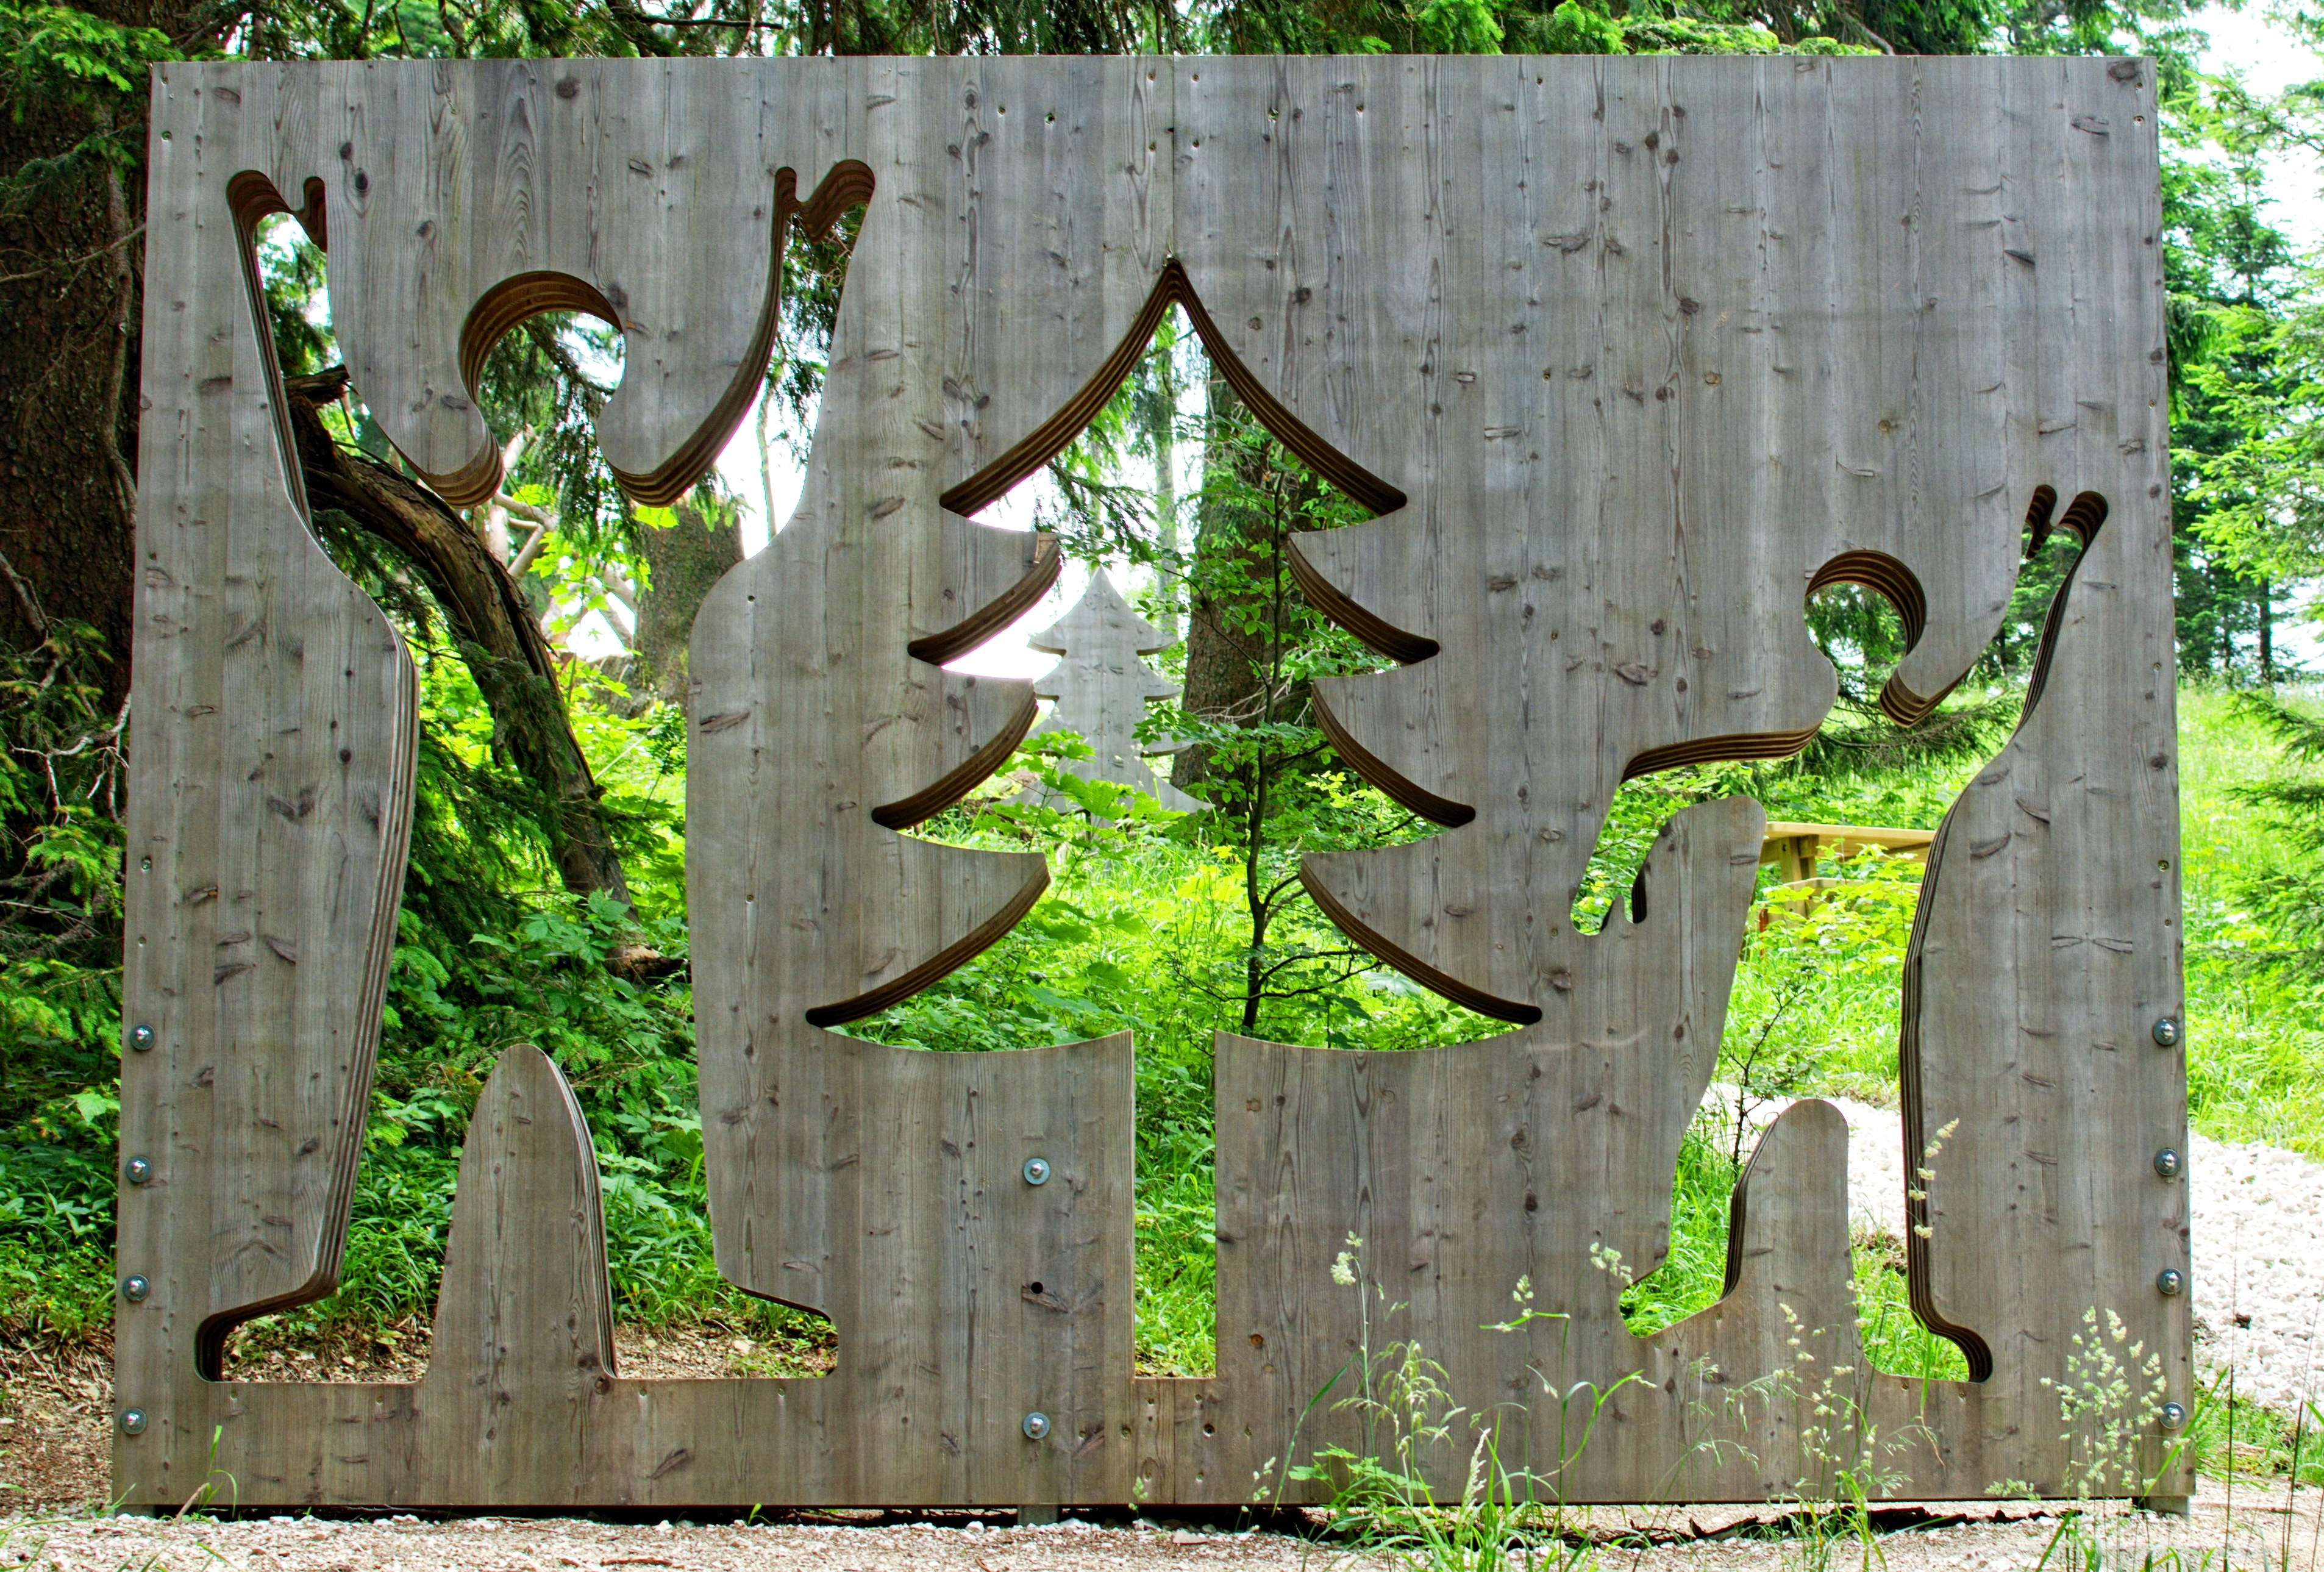  Imagen en la que se muestra una especie de pino  entre dos figuras humanas.